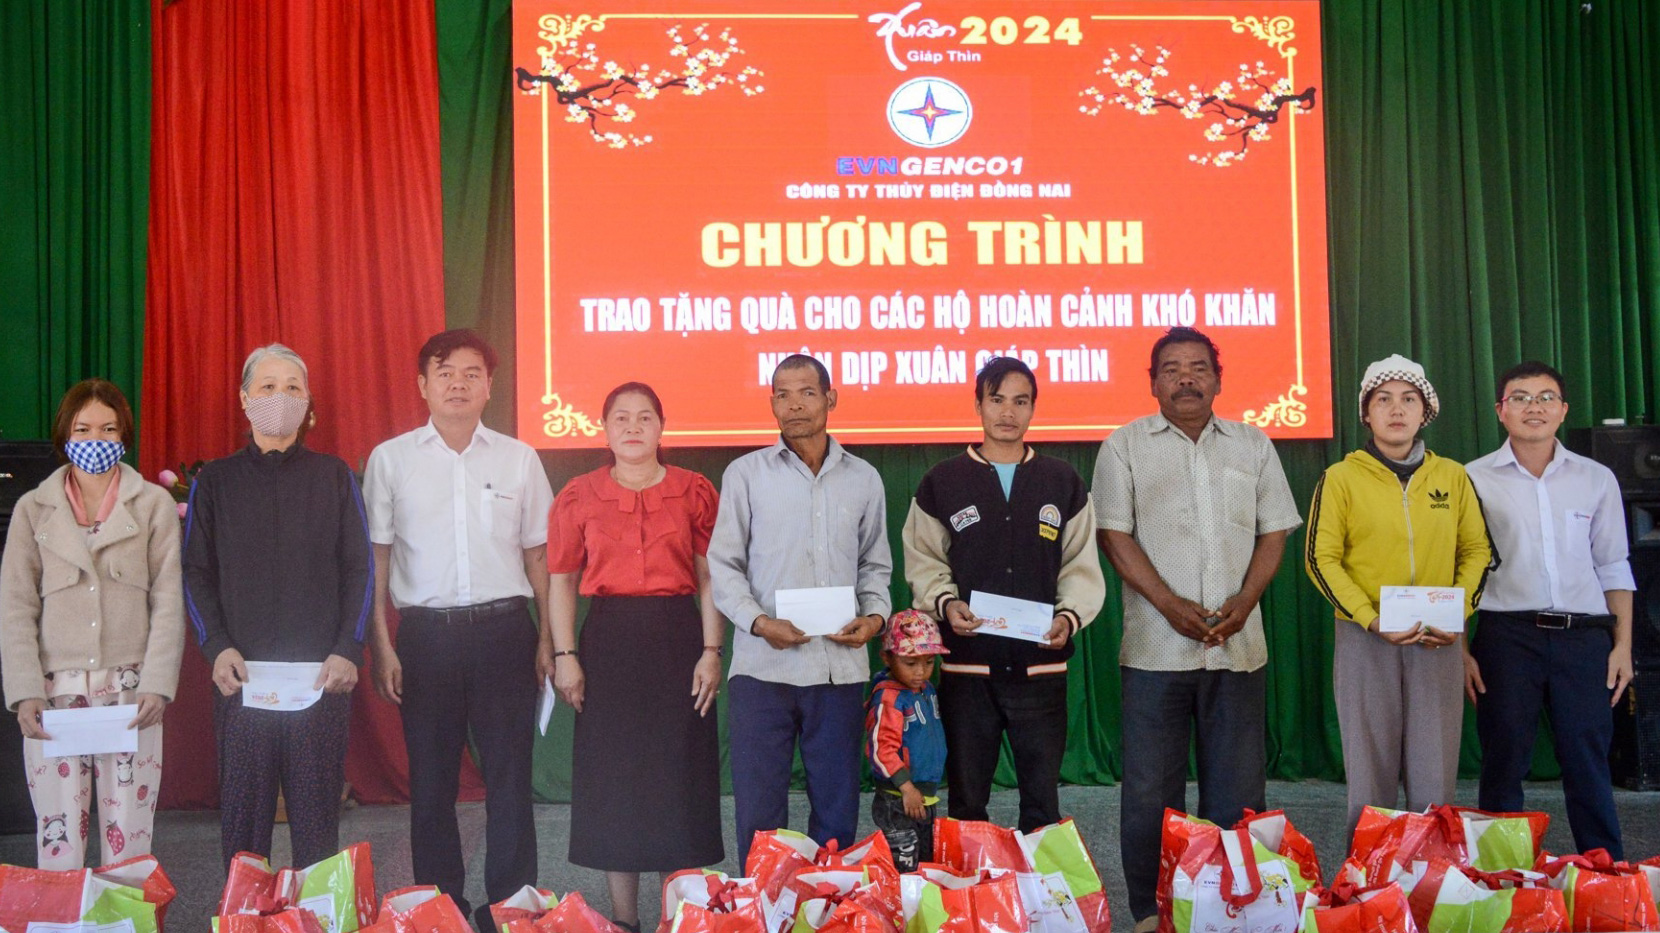 Trao quà cho các hộ dân tại xã Lộc Bảo, huyện Bảo Lâm